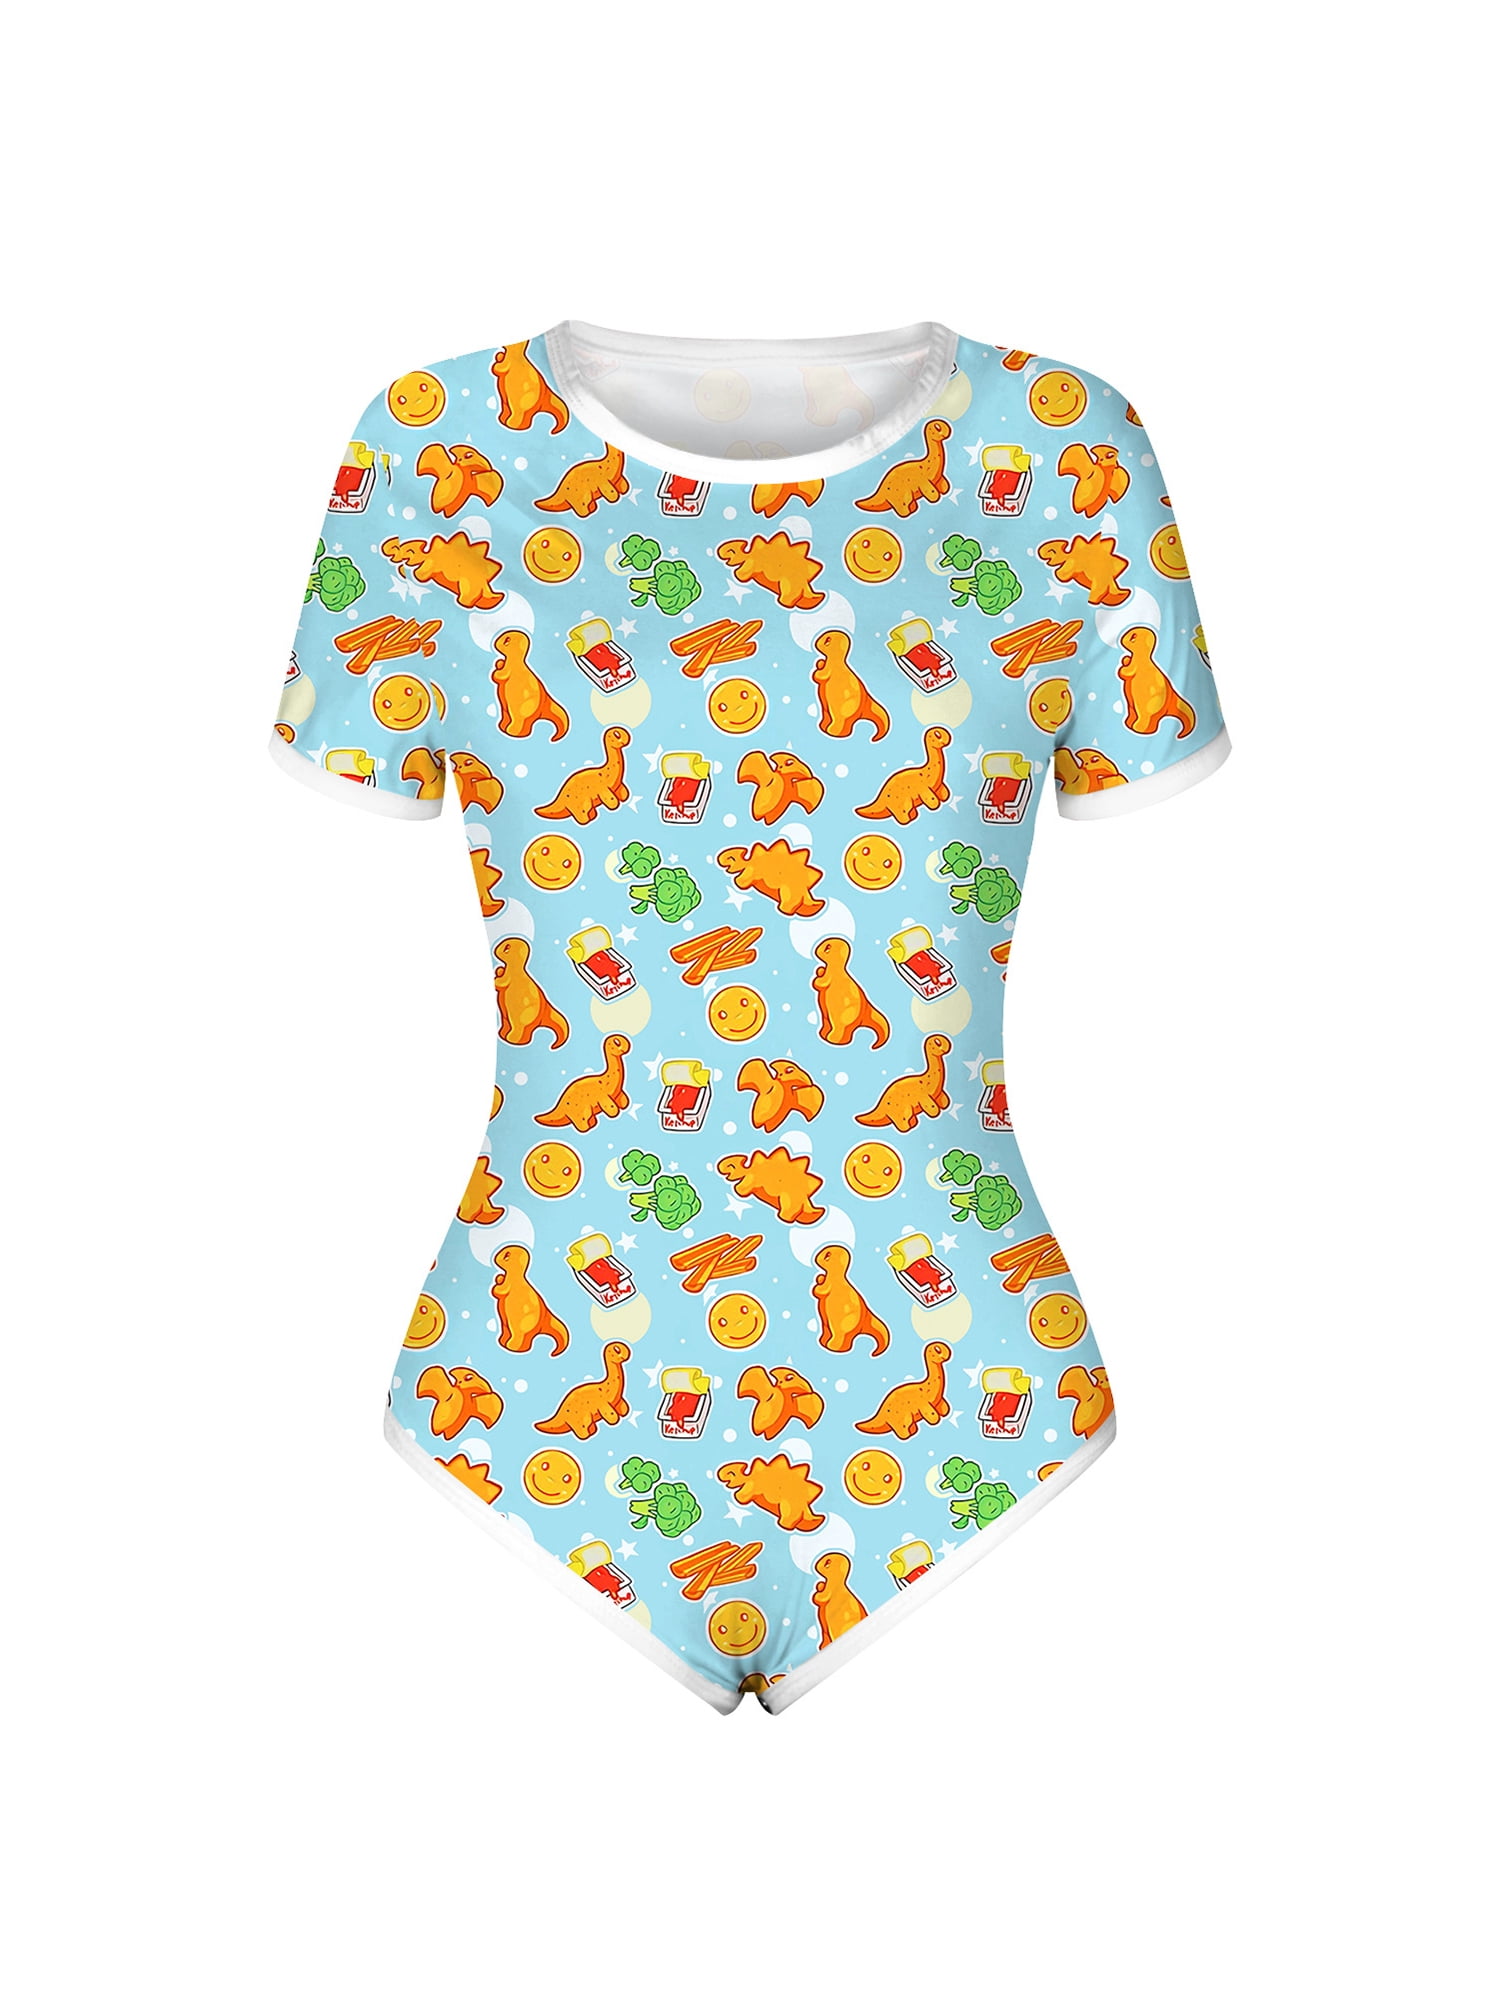 Button Crotch Romper Onesie Pajamas ABDL Littleforbig Adult Baby Onesie Diaper Lover Dinosaurs Pattern 